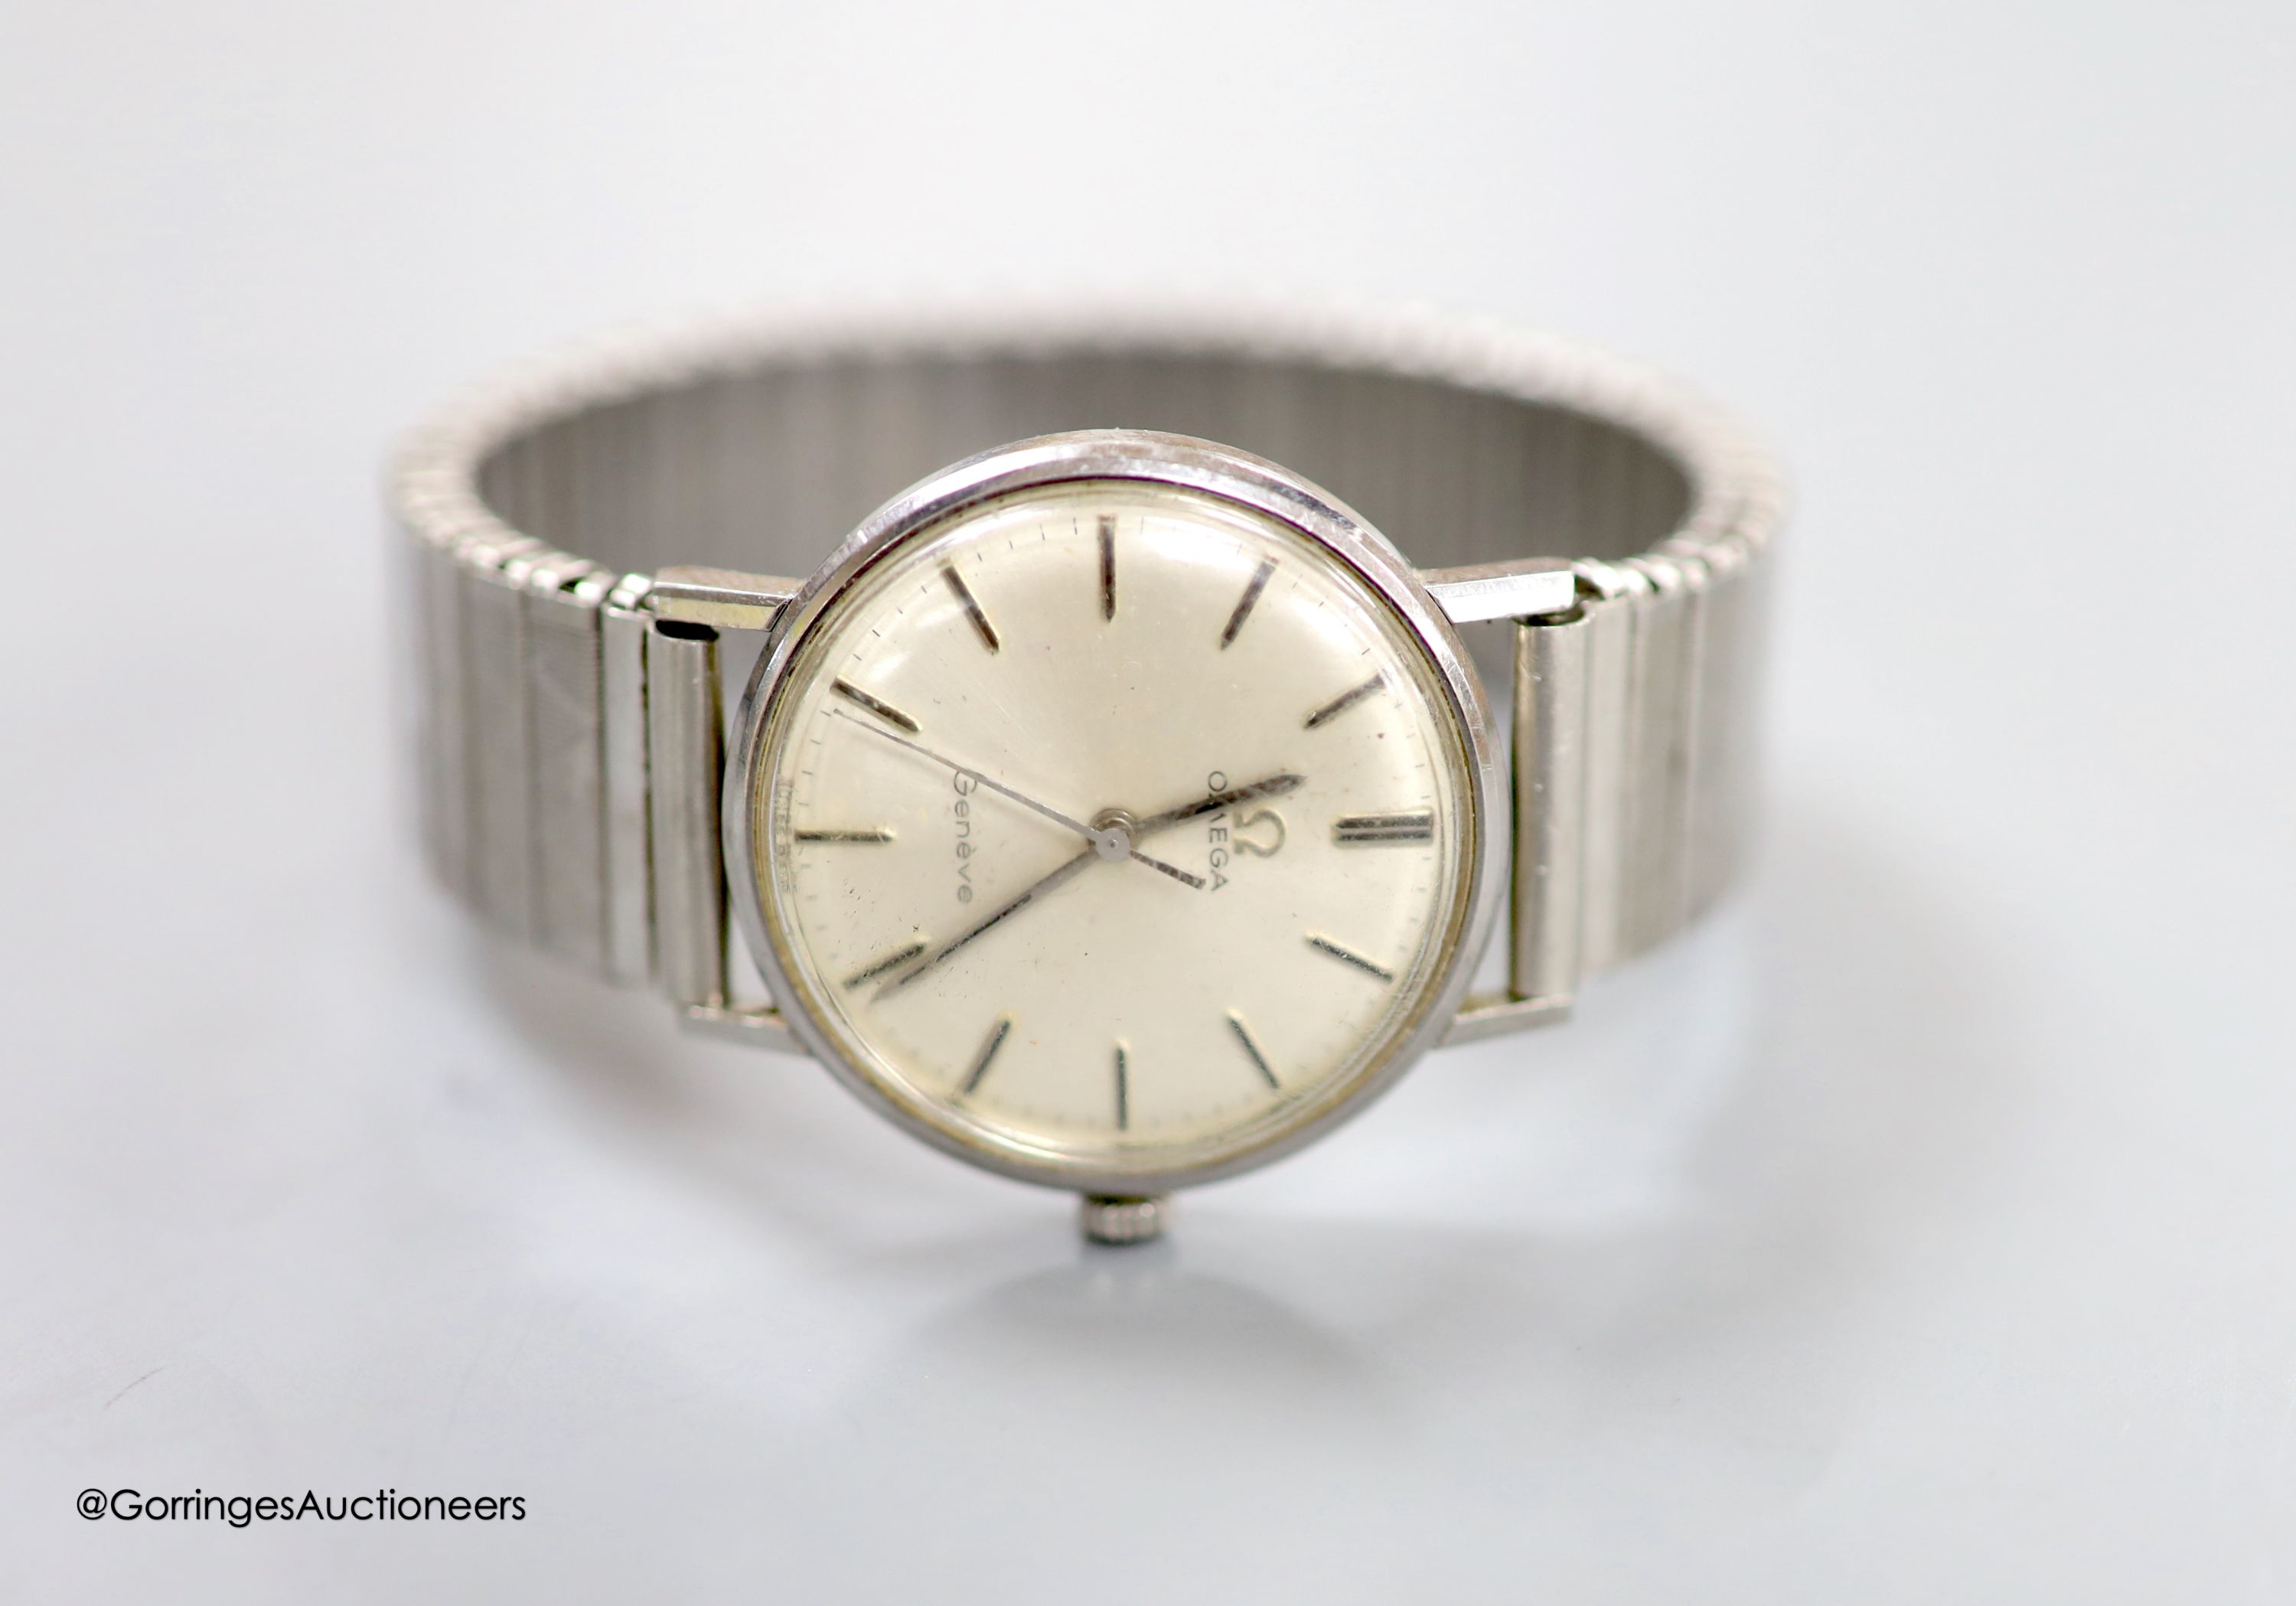 A gentleman's 1960's steel Omega manual wind wrist watch, on an associated flexible strap